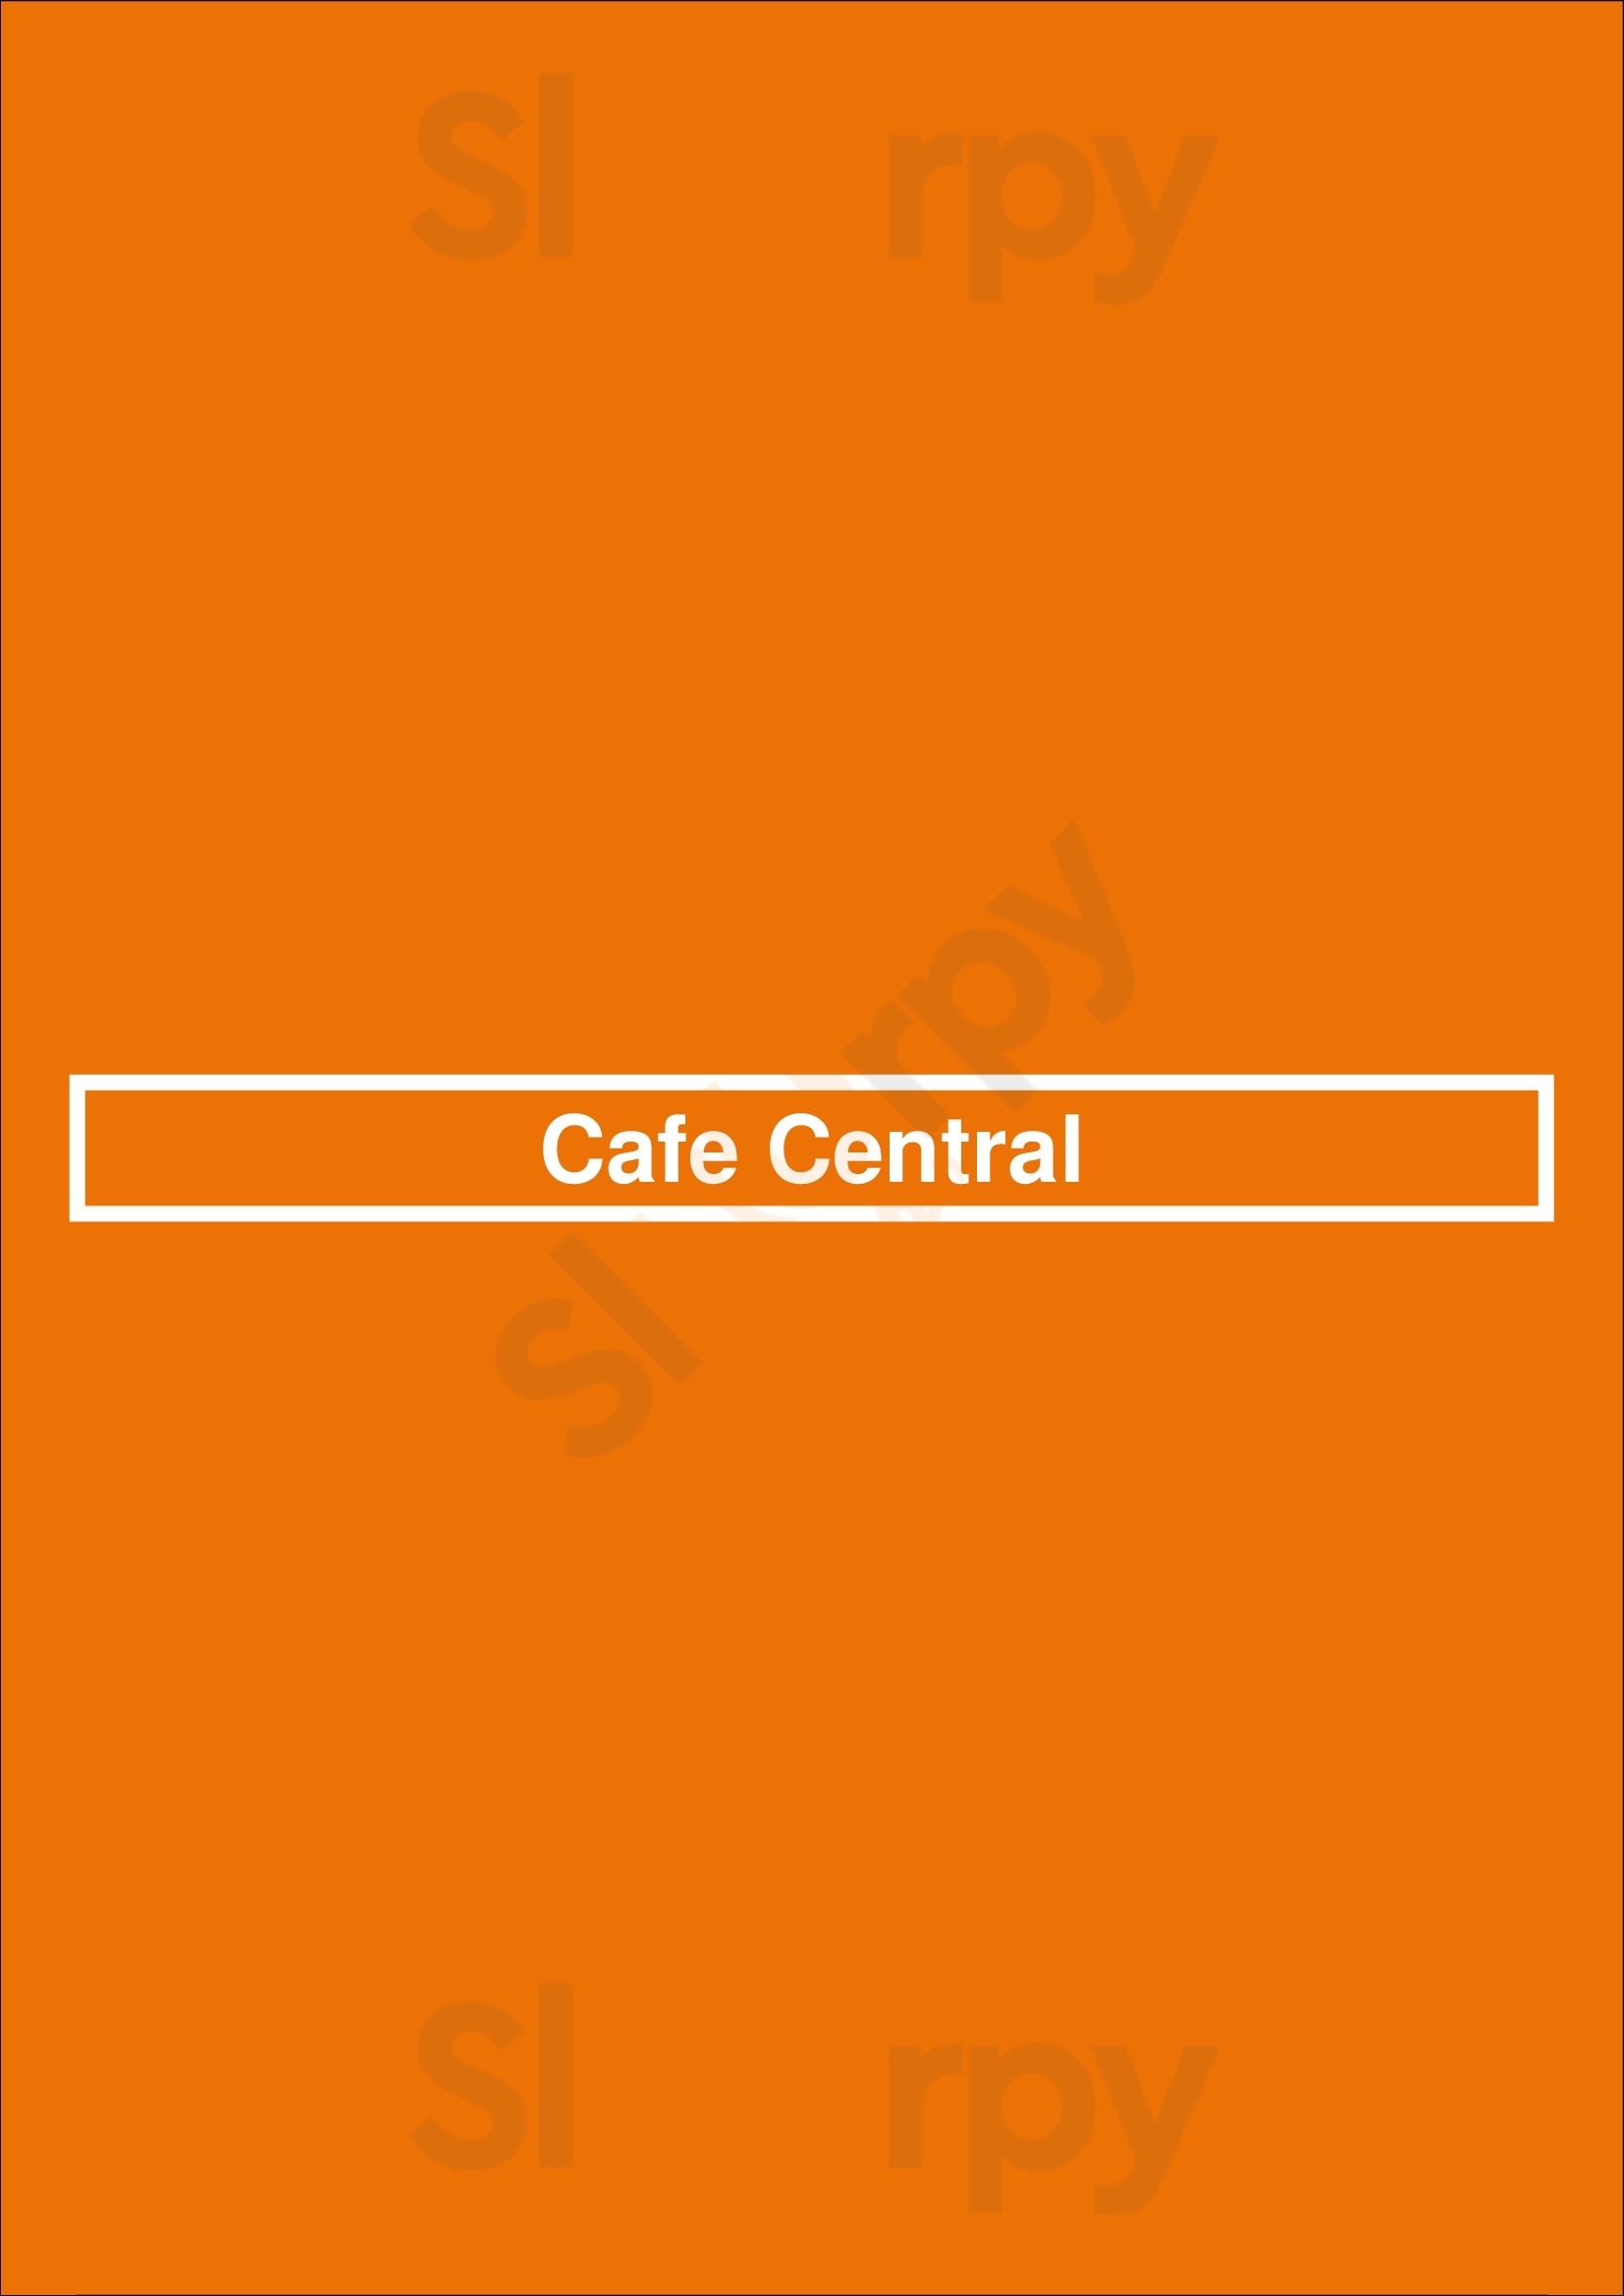 Cafe Central El Paso Menu - 1